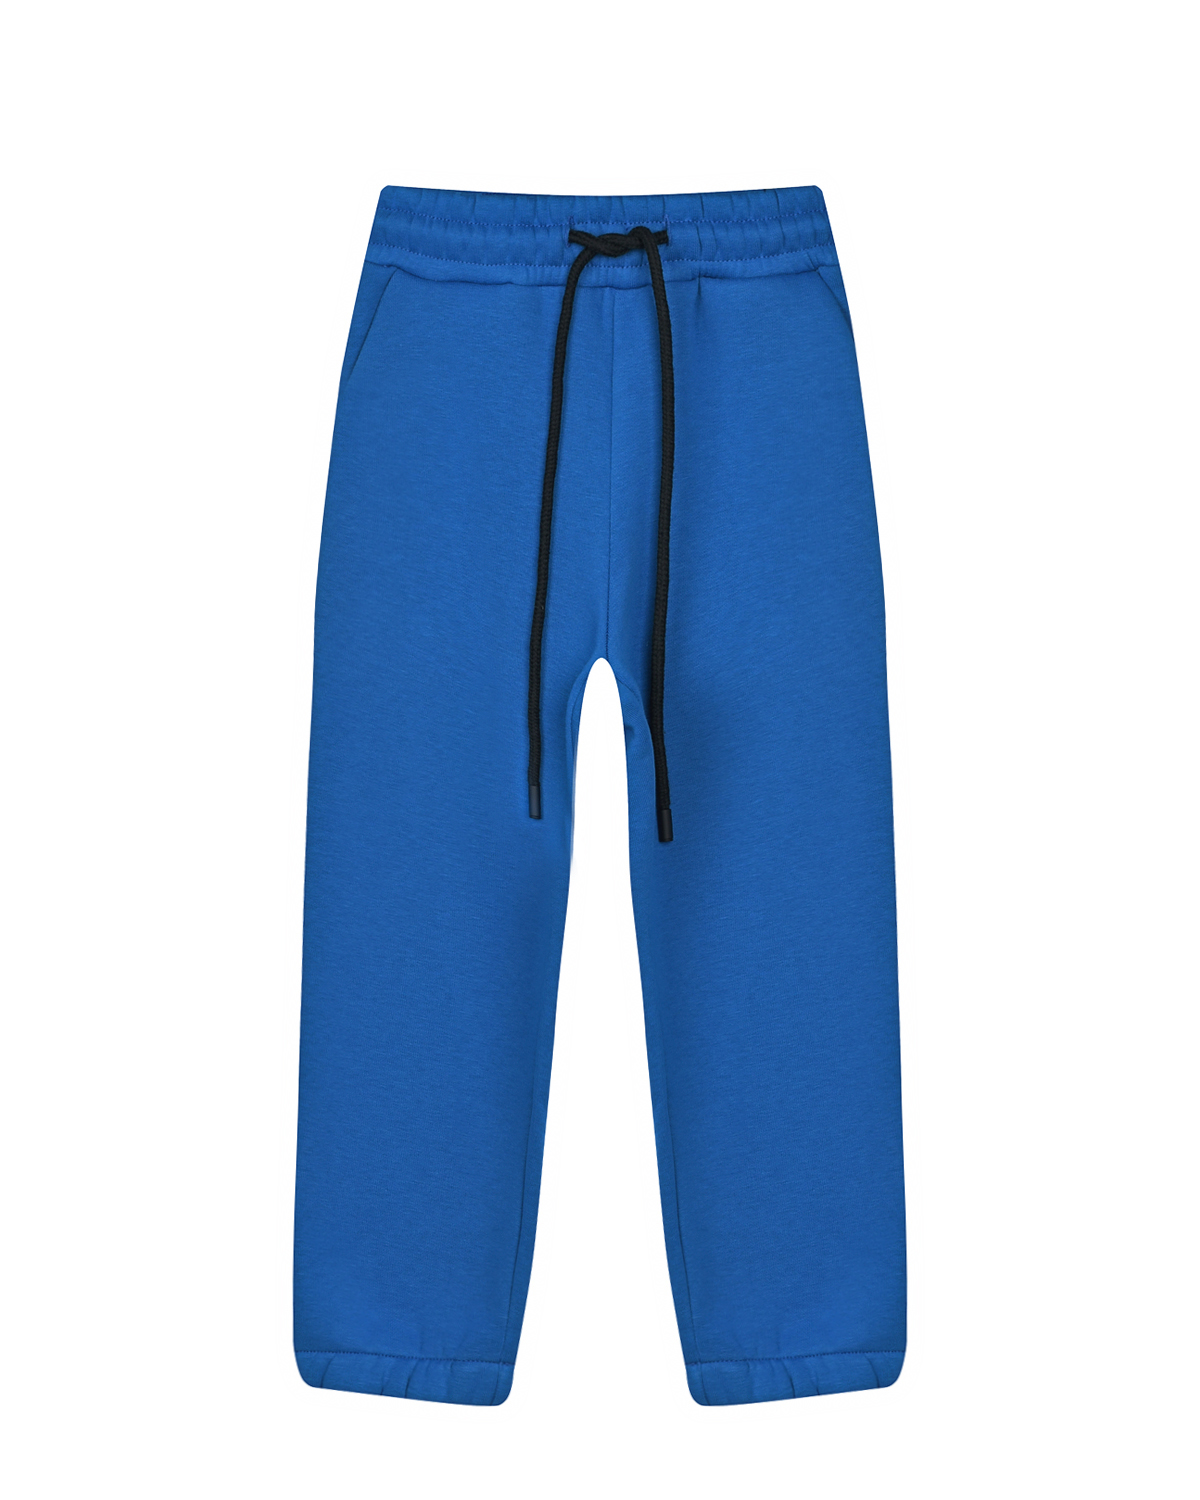 Синие спортивные брюки Dan Maralex детские, размер 104, цвет синий - фото 1